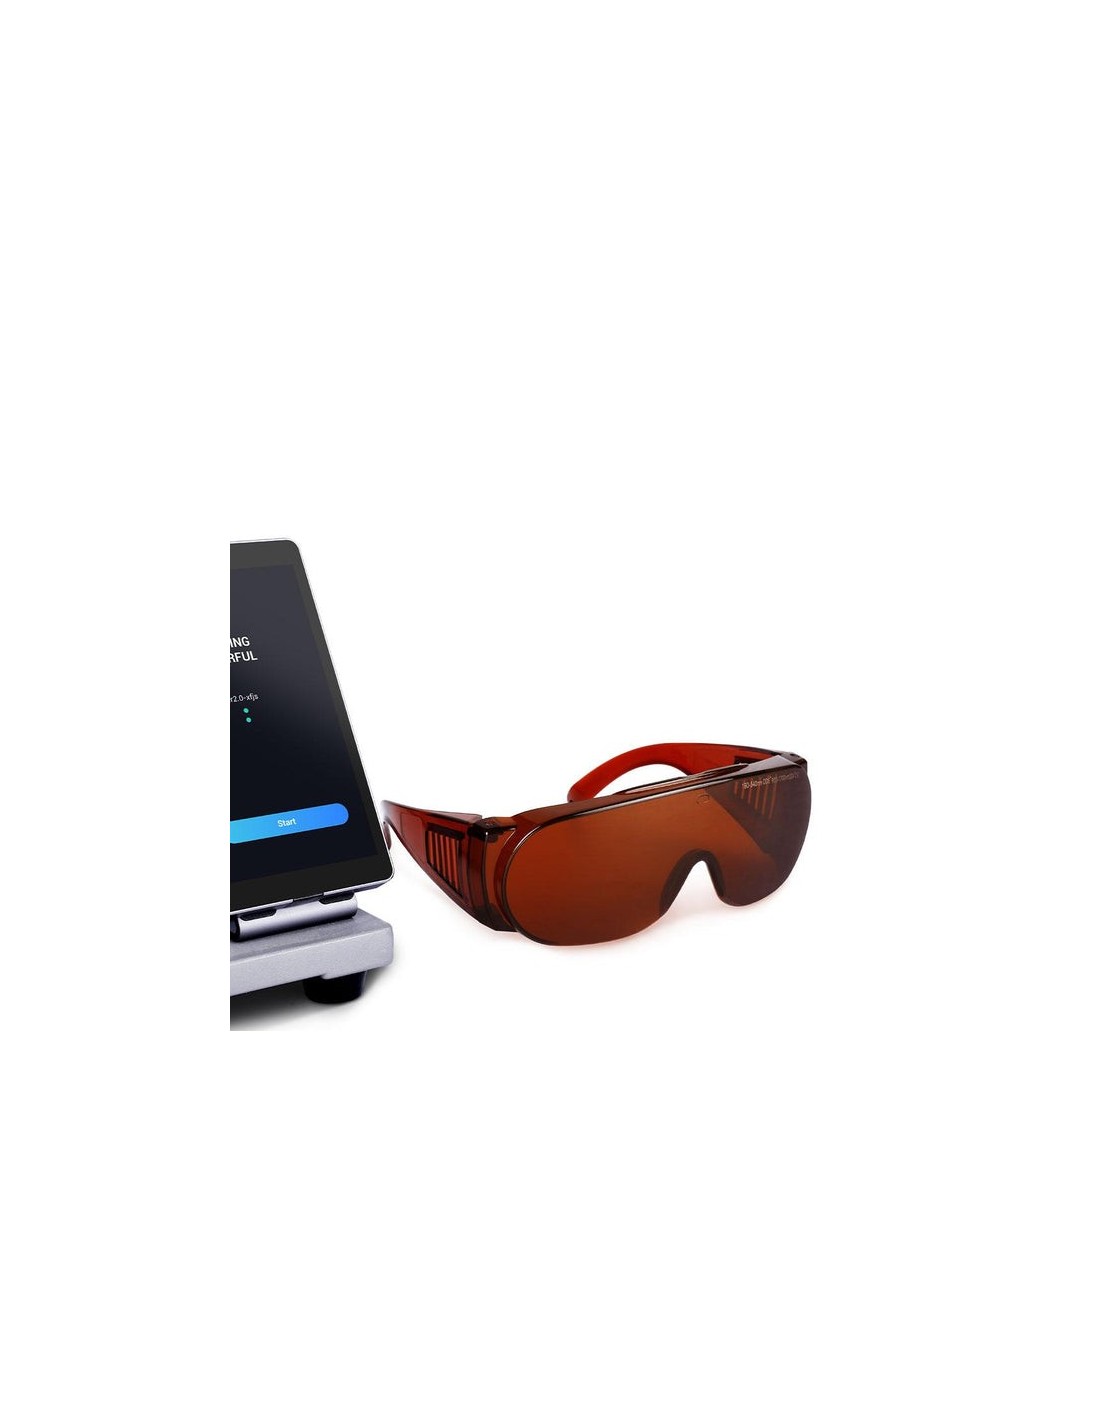 Snapmaker Laserschutzbrille